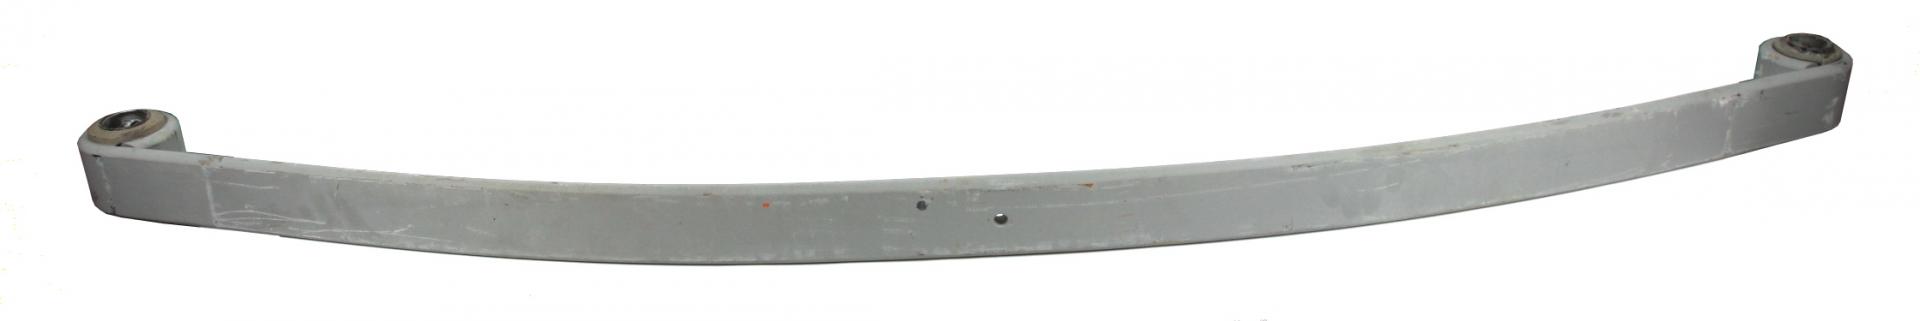 Рессоры Рессора передняя коренная DB 1114-1524 (1/19mm) (80/860/860) TES арт. 3340200119ZT